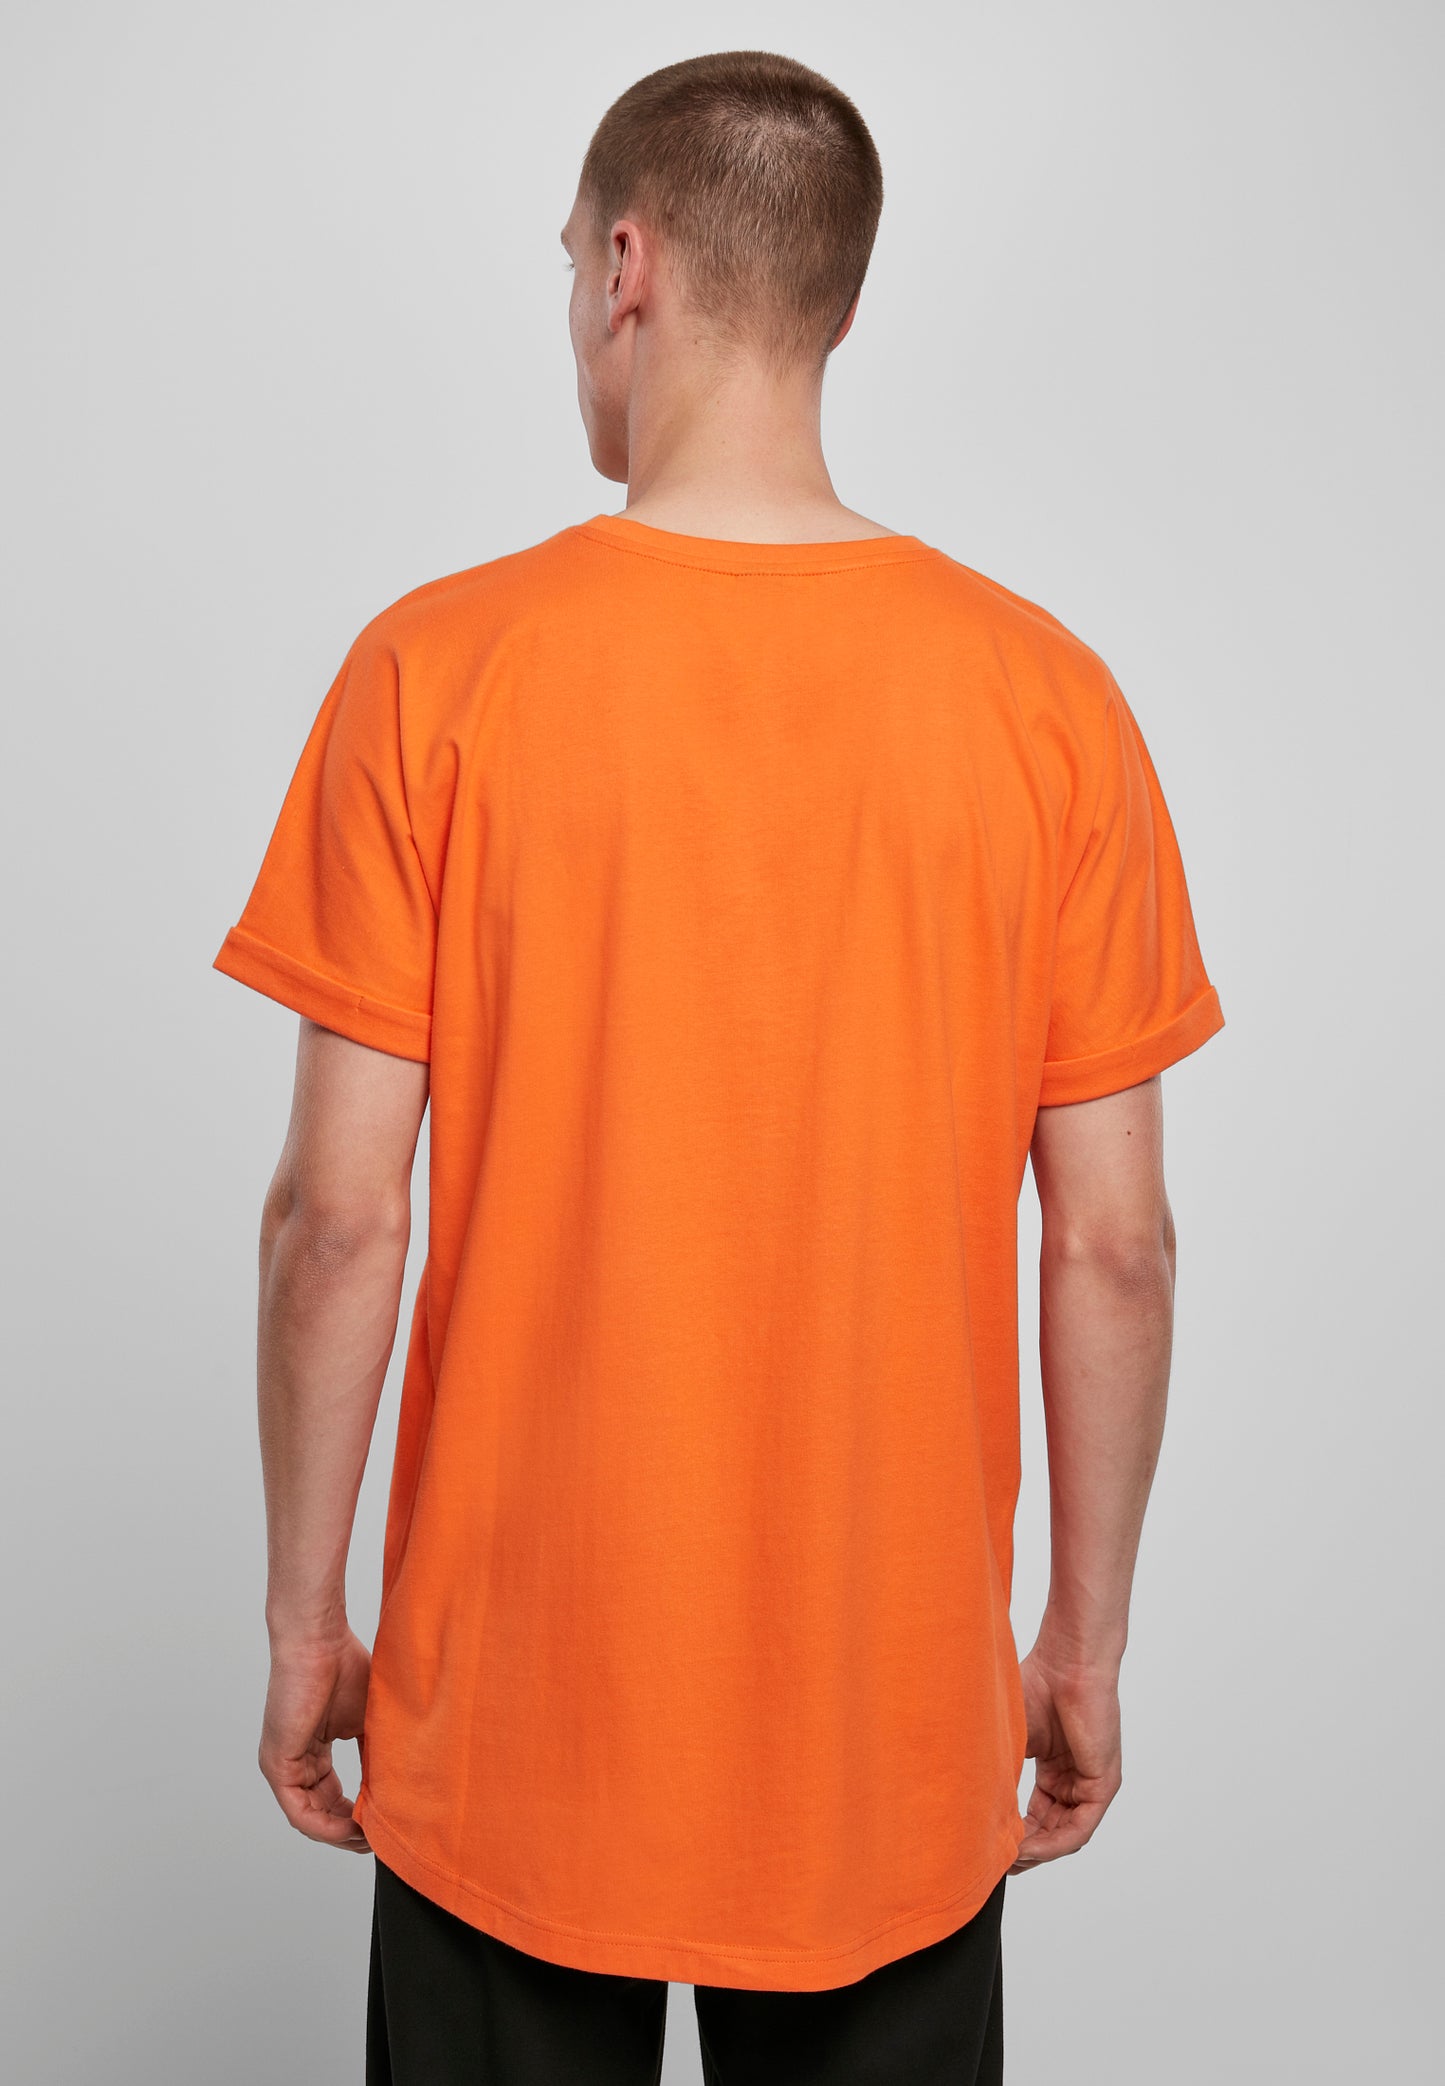 Urban Classics Long Shaped Turnup T-Shirt in Mandarin